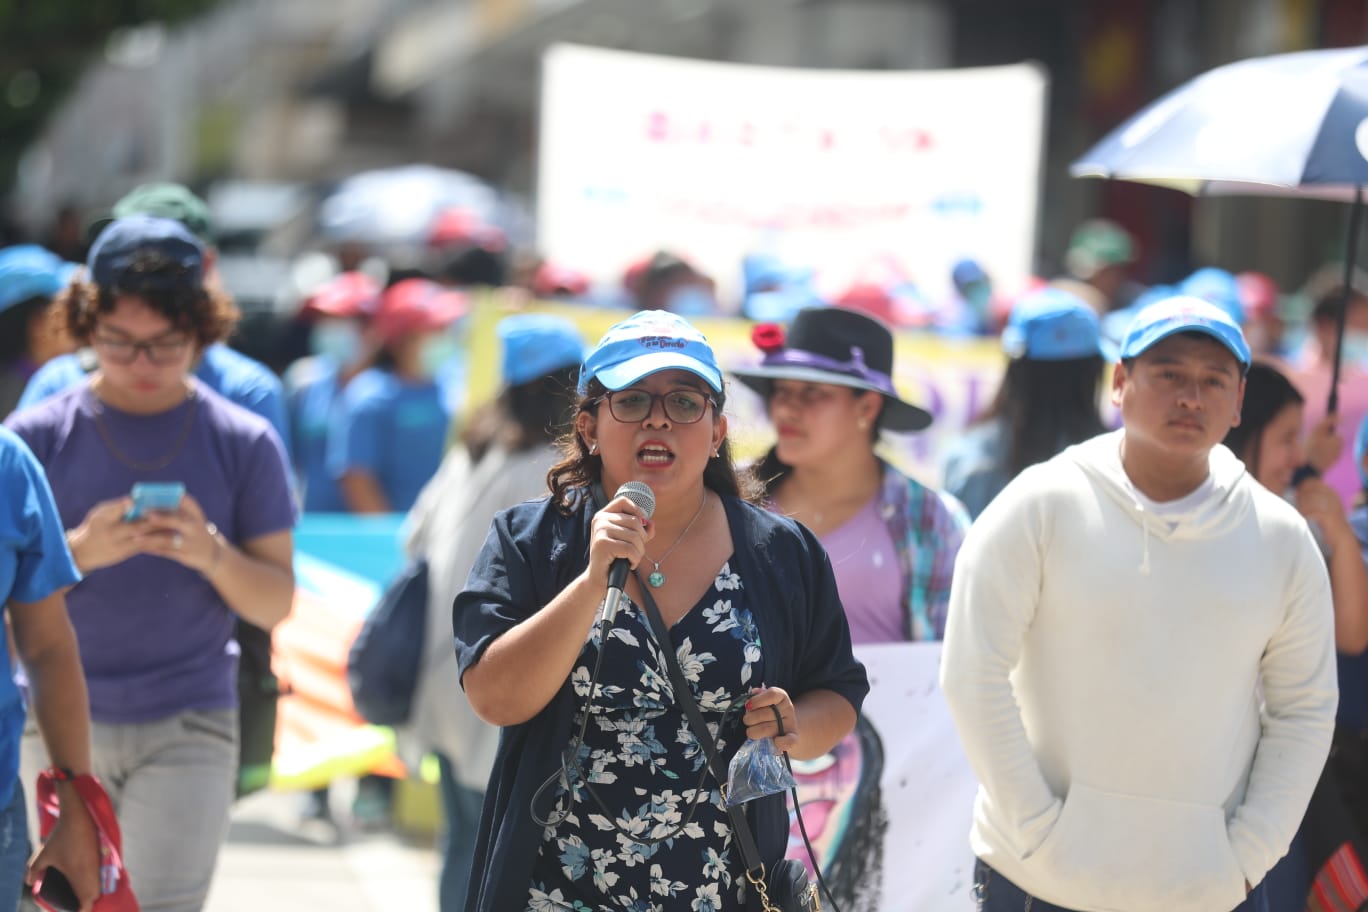 Las mujeres tomaron las calles en protesta para que el Gobierno accione ante las más de 400 muertes violentas de mujeres registradas solo en este 2022, según cifras oficiales. (Foto Prensa Libre: Juan Diego González)